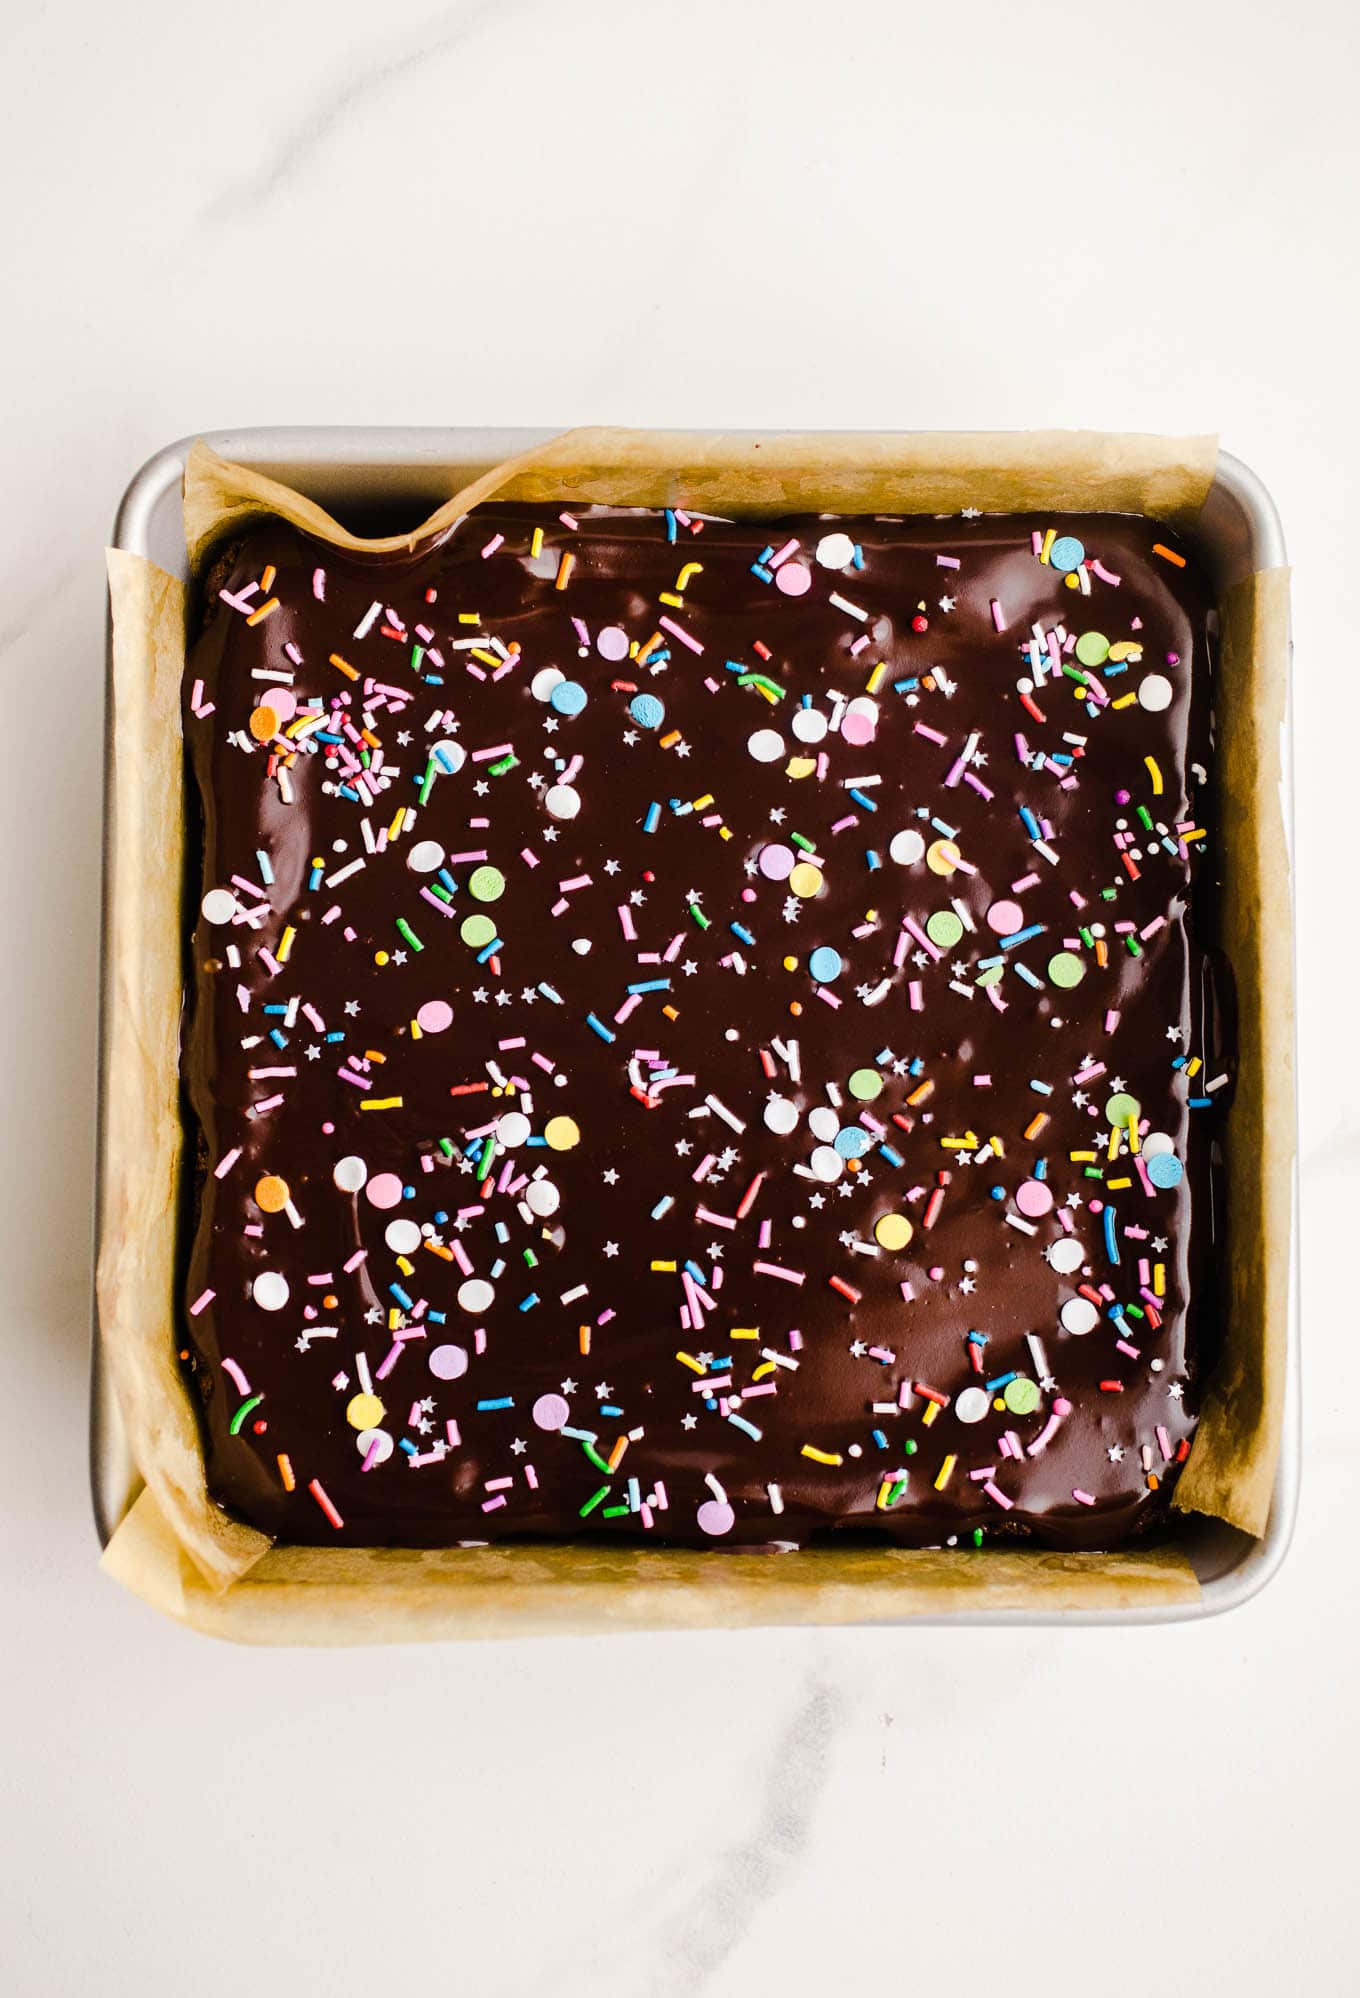 Kosmische Brownies mit Schokoladenganache und Streuseln